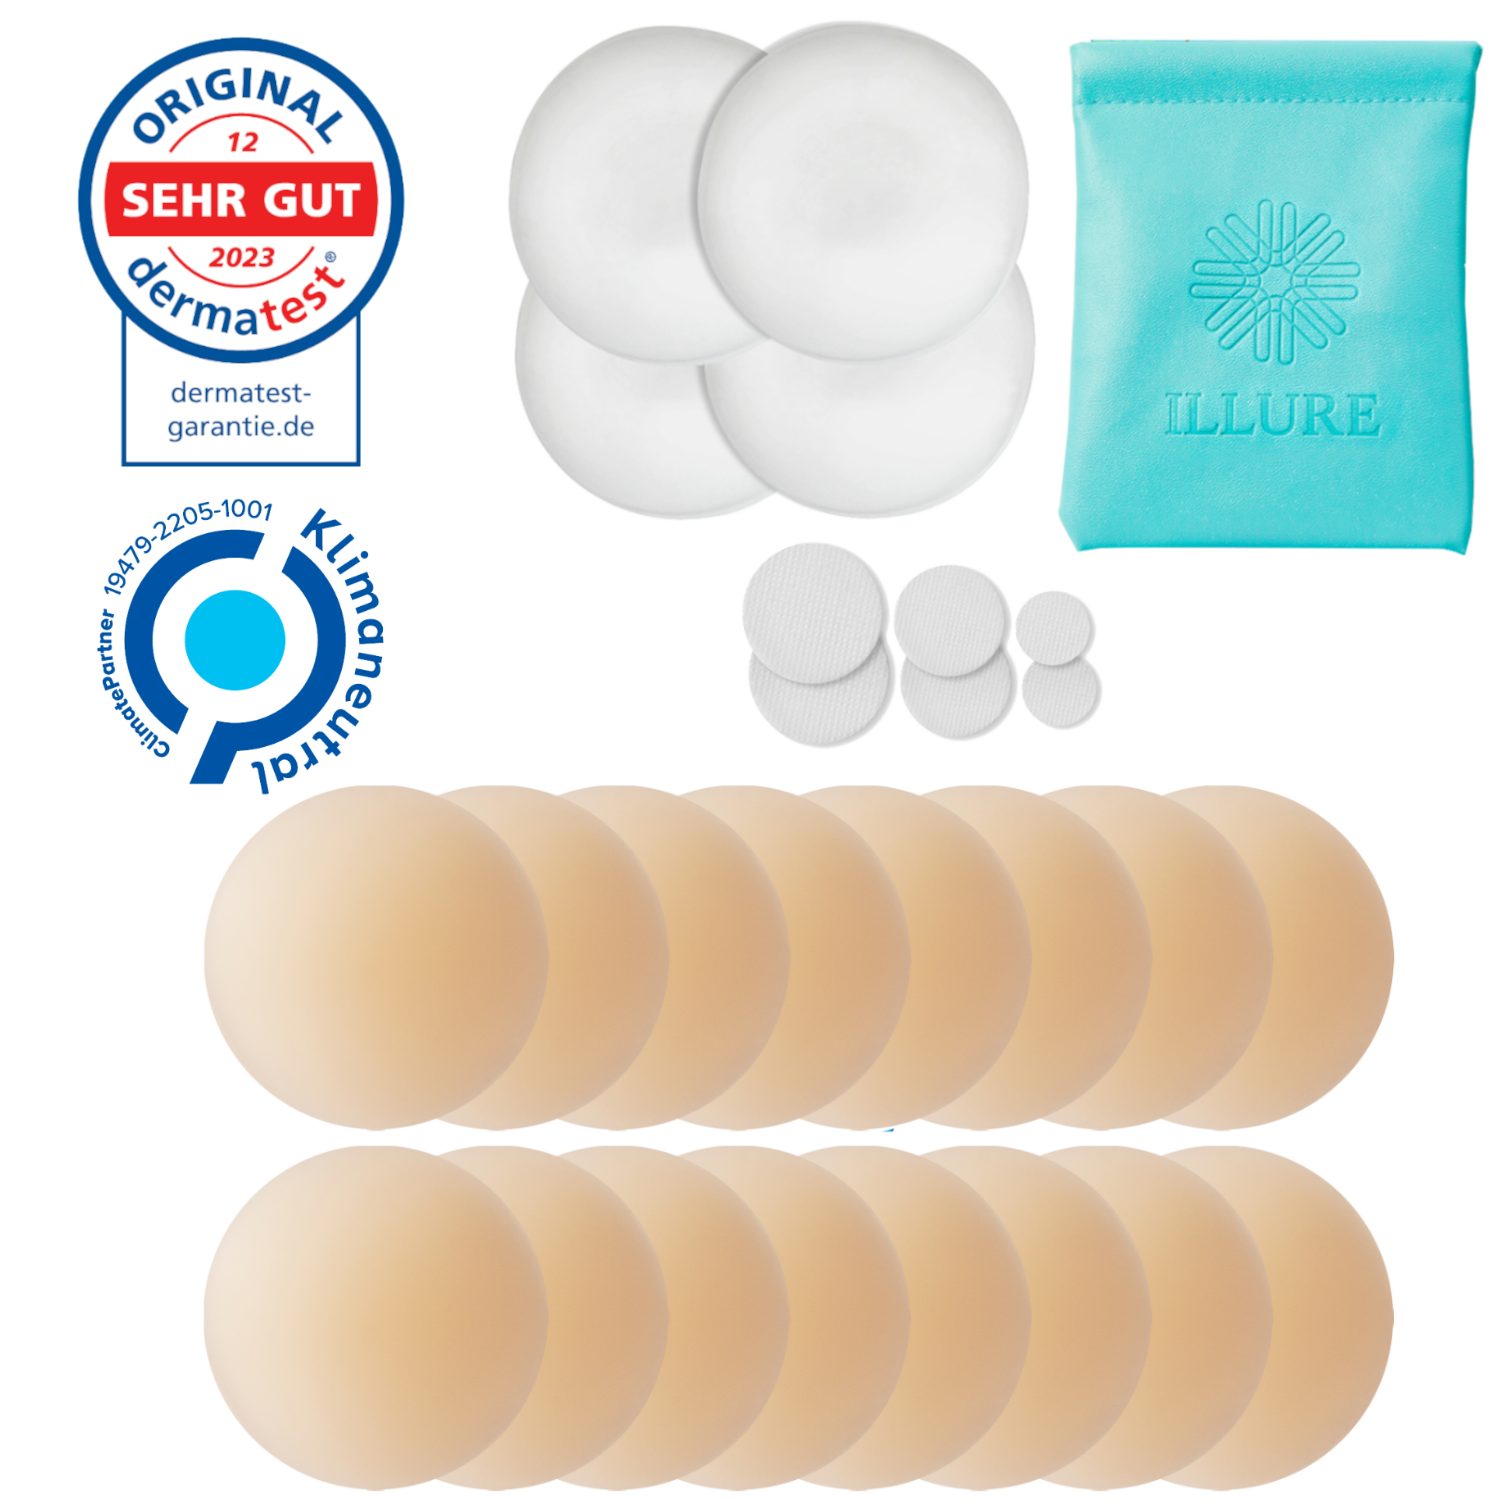 ILLURE BH-Einlagen Nippelpads – Nipple Cover Brustwarzenschutz -Wiederverwendbar&waschbar, mit kleiner Tragetasche für diskreten Transport im Alltag